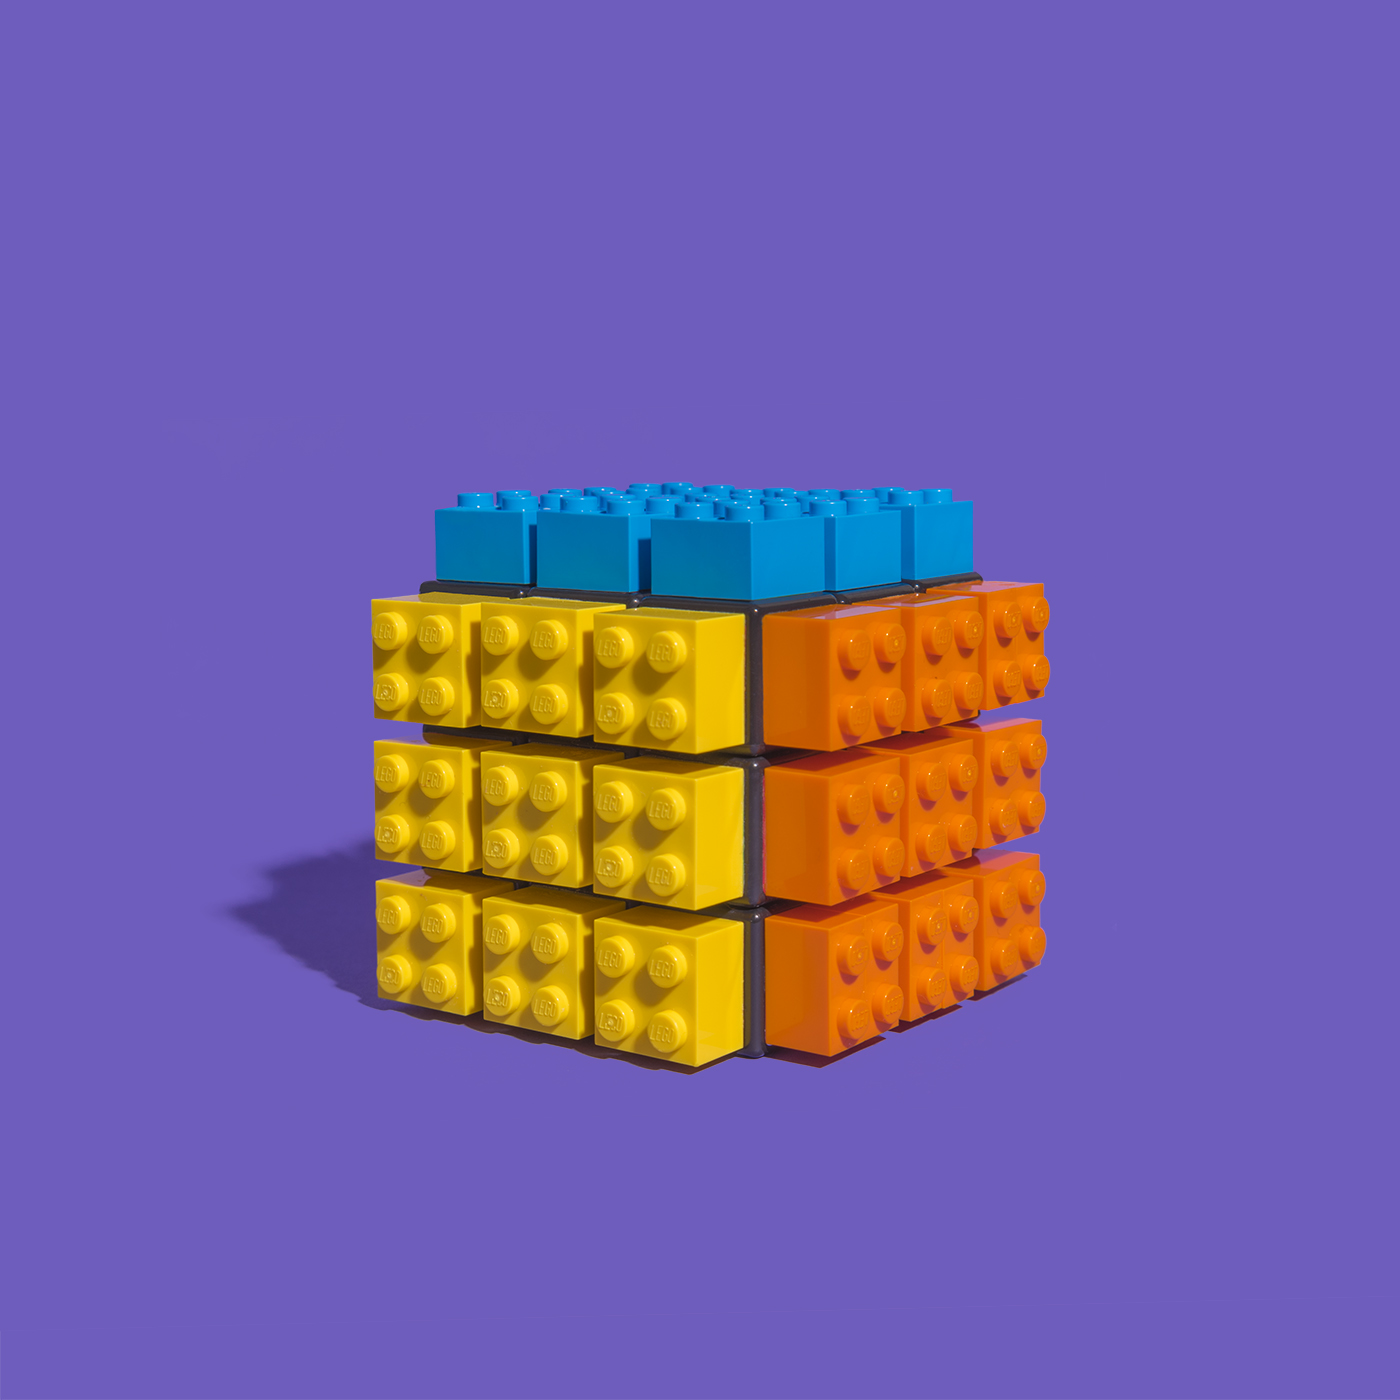 LEGO Rubik